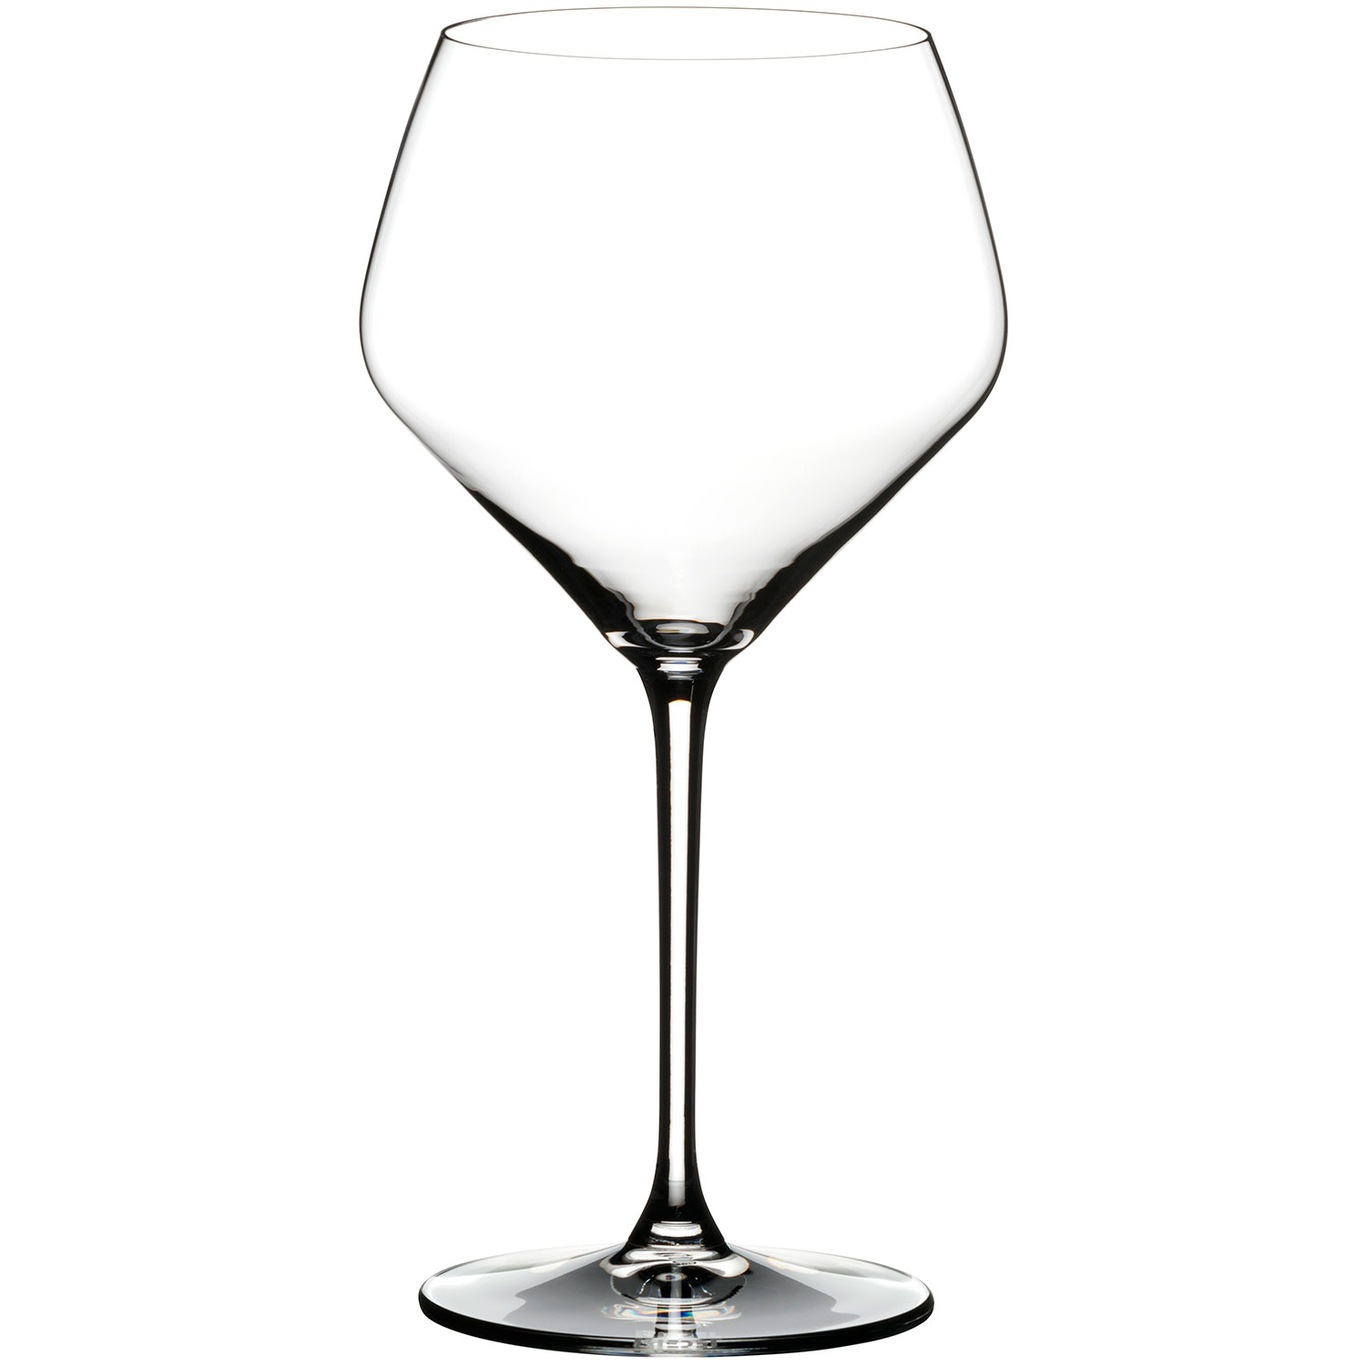 Oaked Chardonnay Weinglas 67 cl, 2-er Set